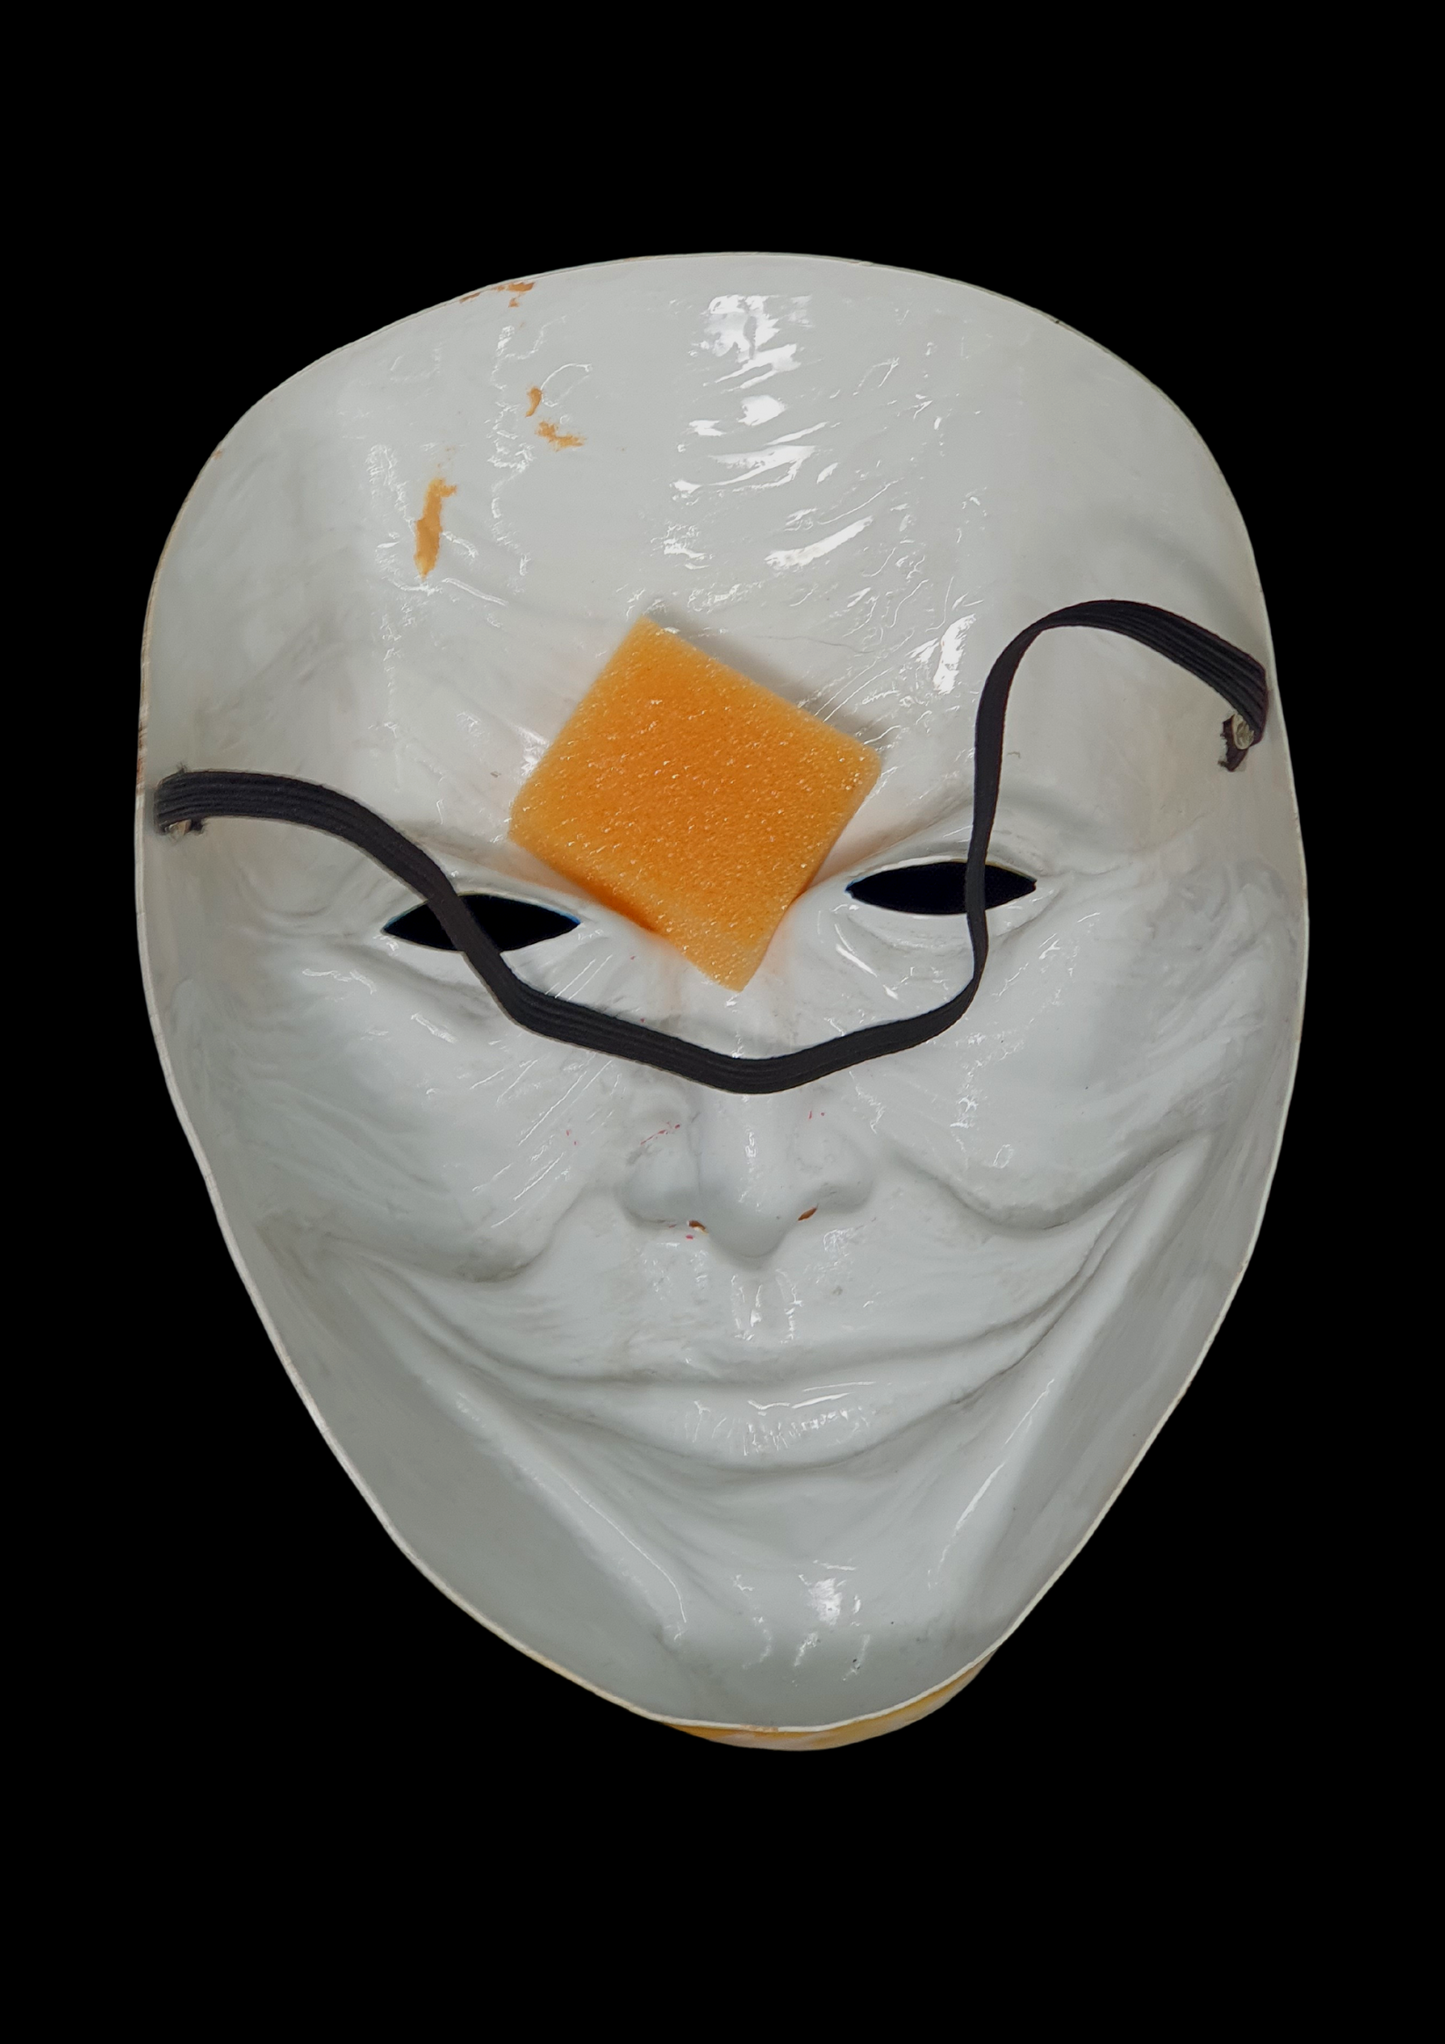 Máscara Joker